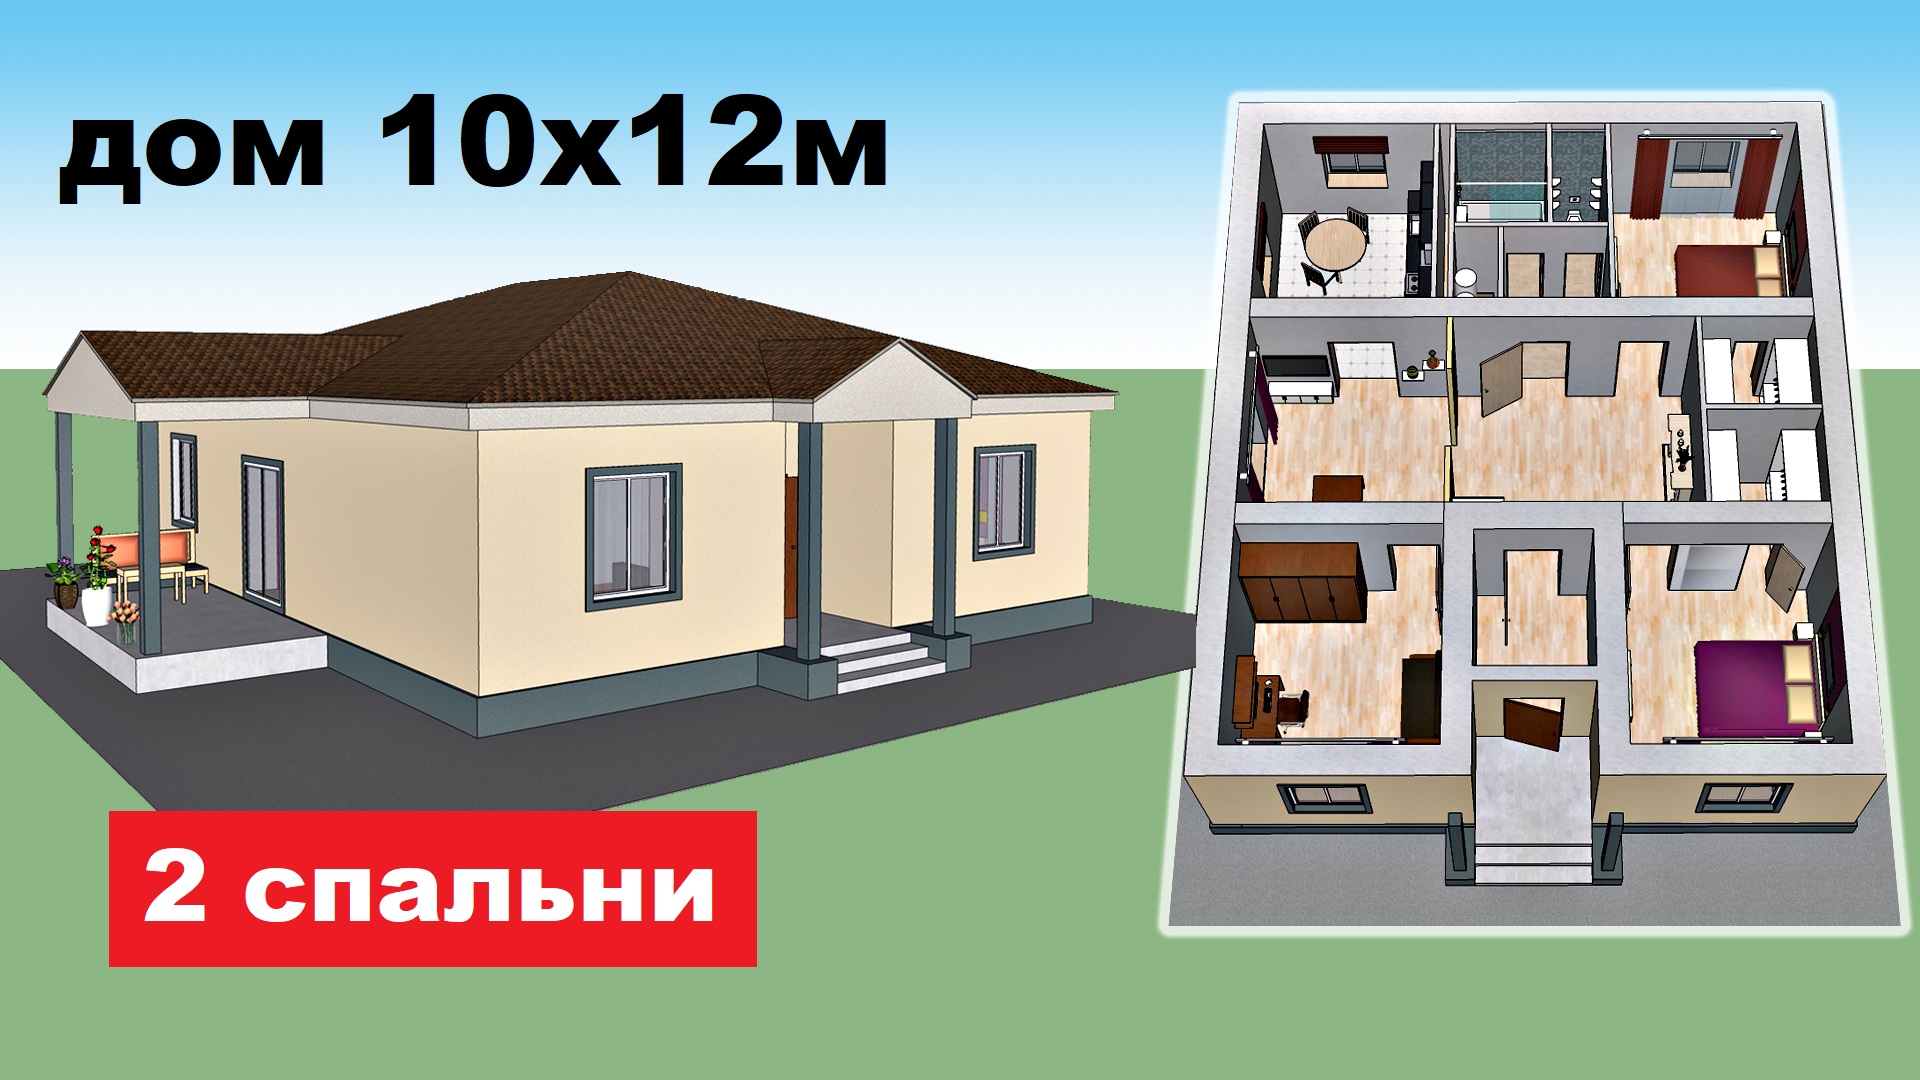 Проект одноэтажного дома 10х12м. 2 спальни, терраса. План дома, дизайн. Проекты домов, обзор дома.